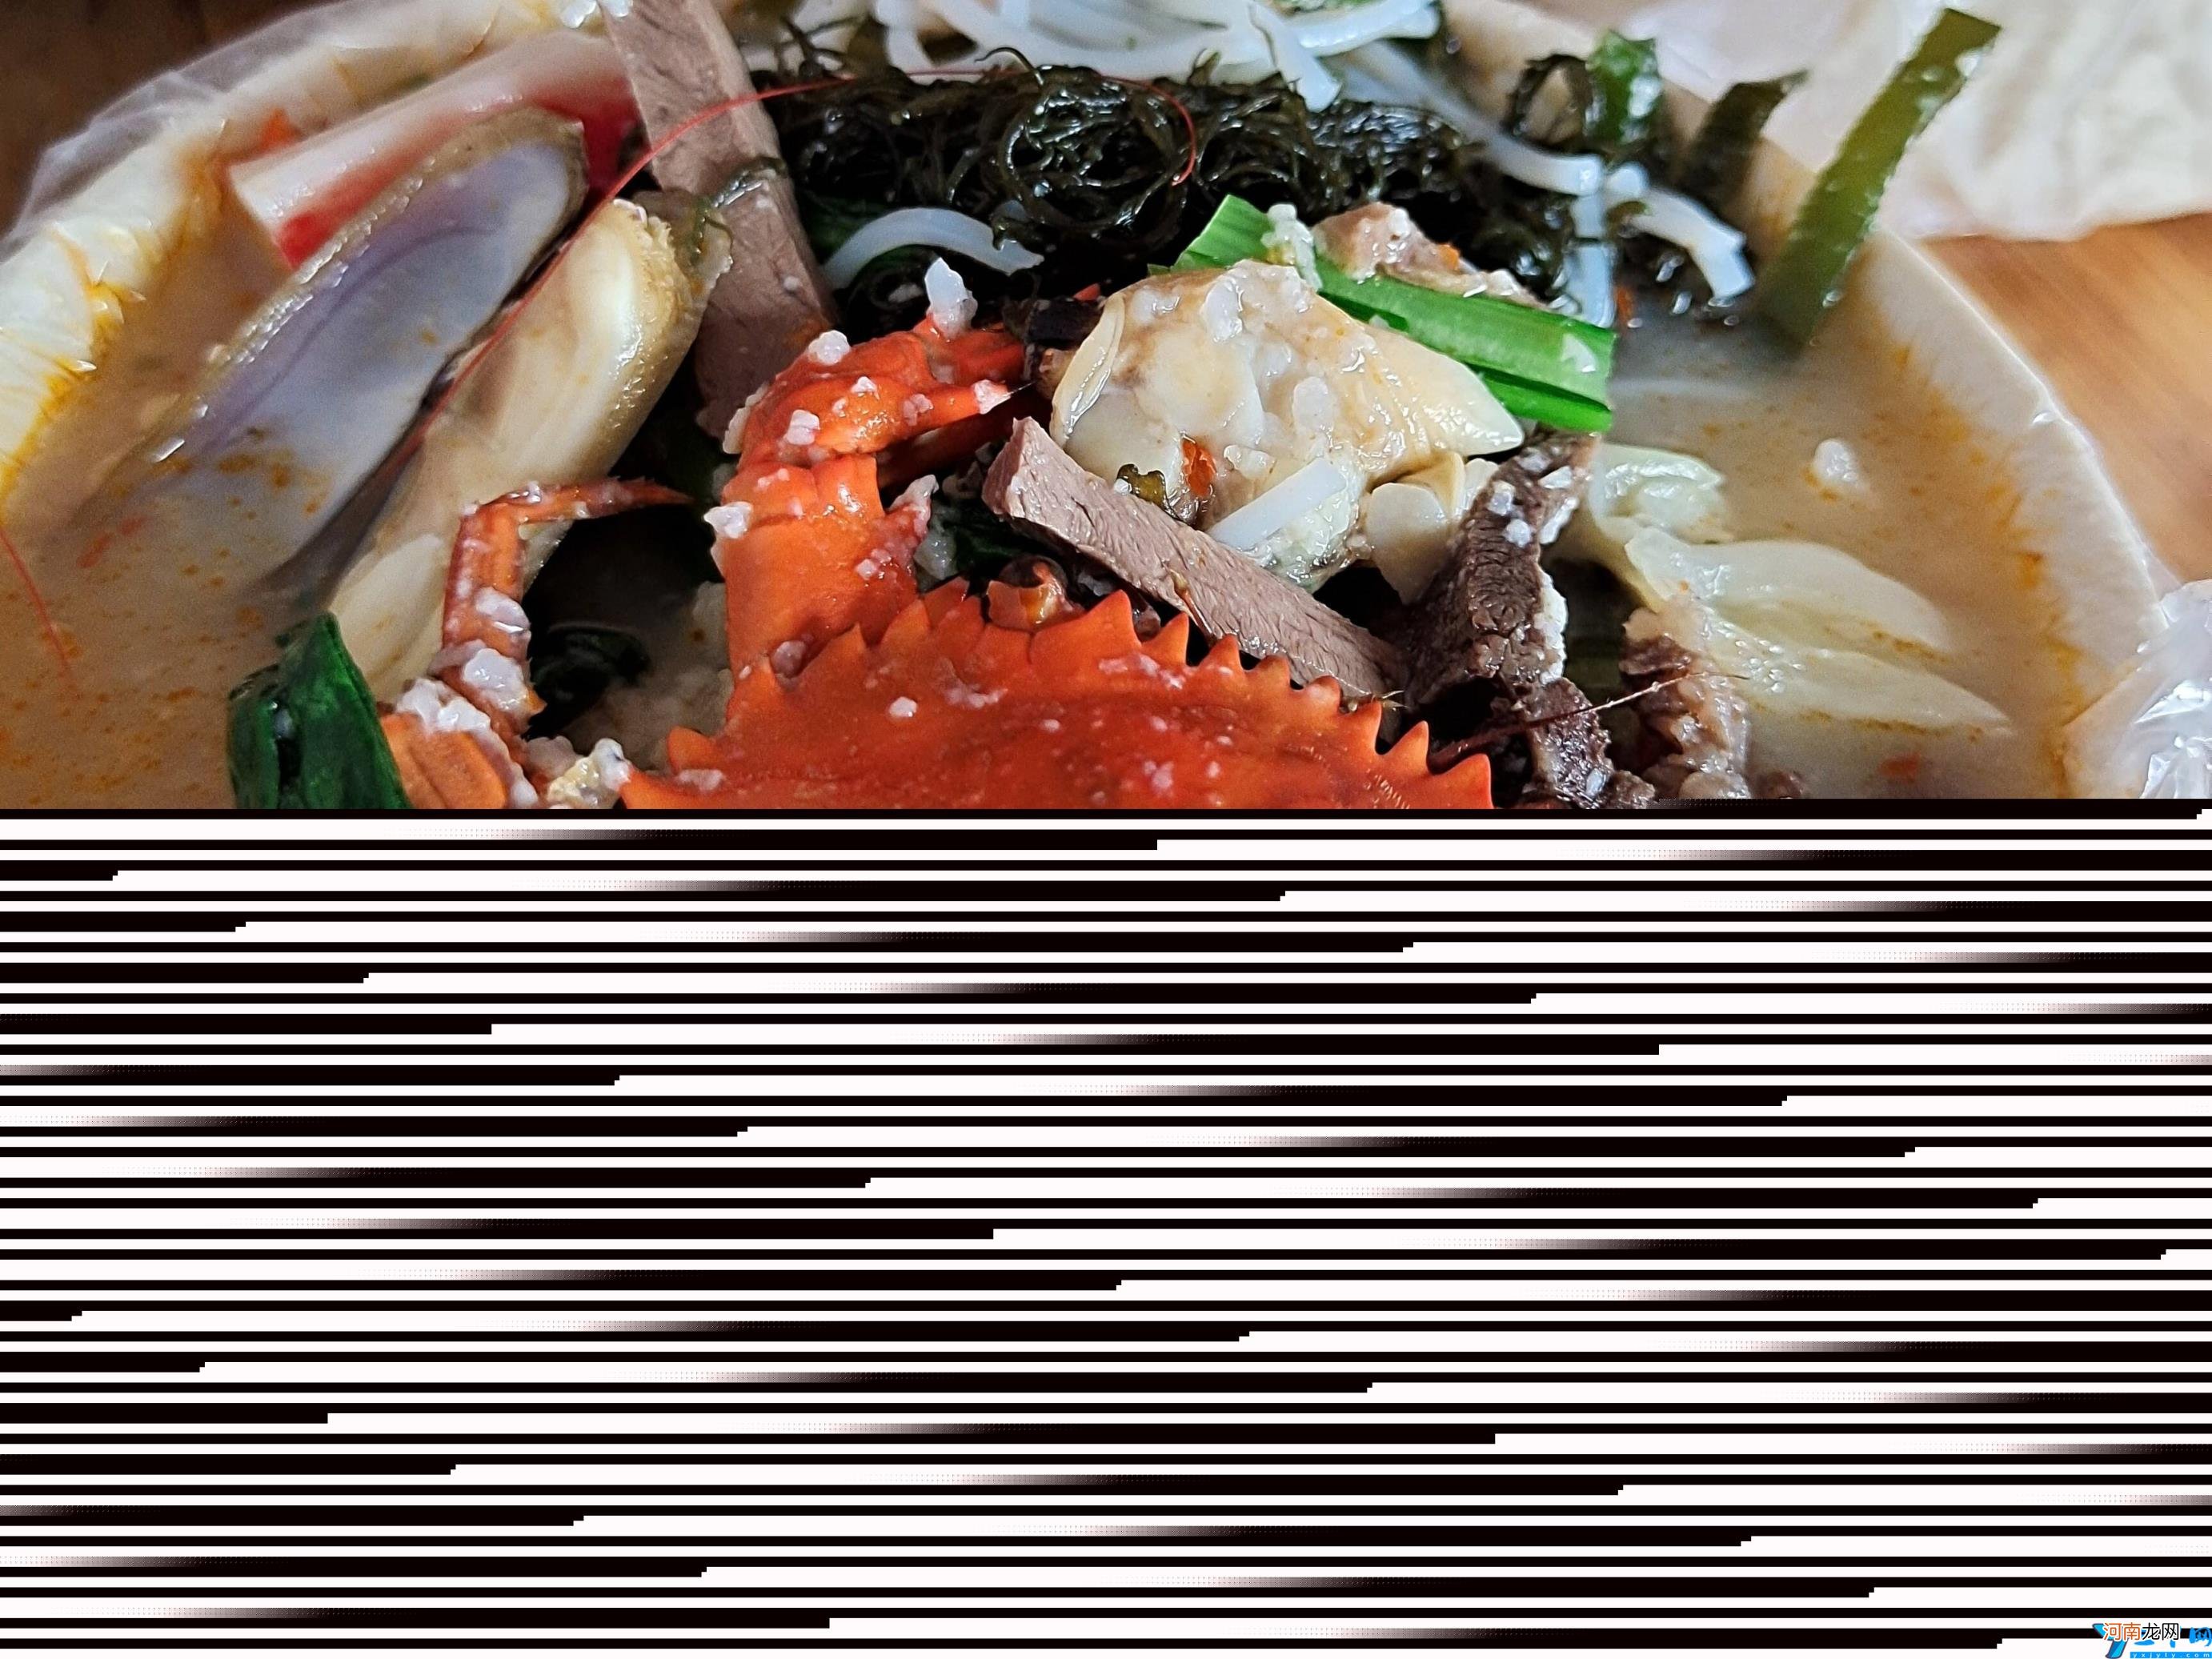 海南最出名22种美食 海南特色小吃有哪些